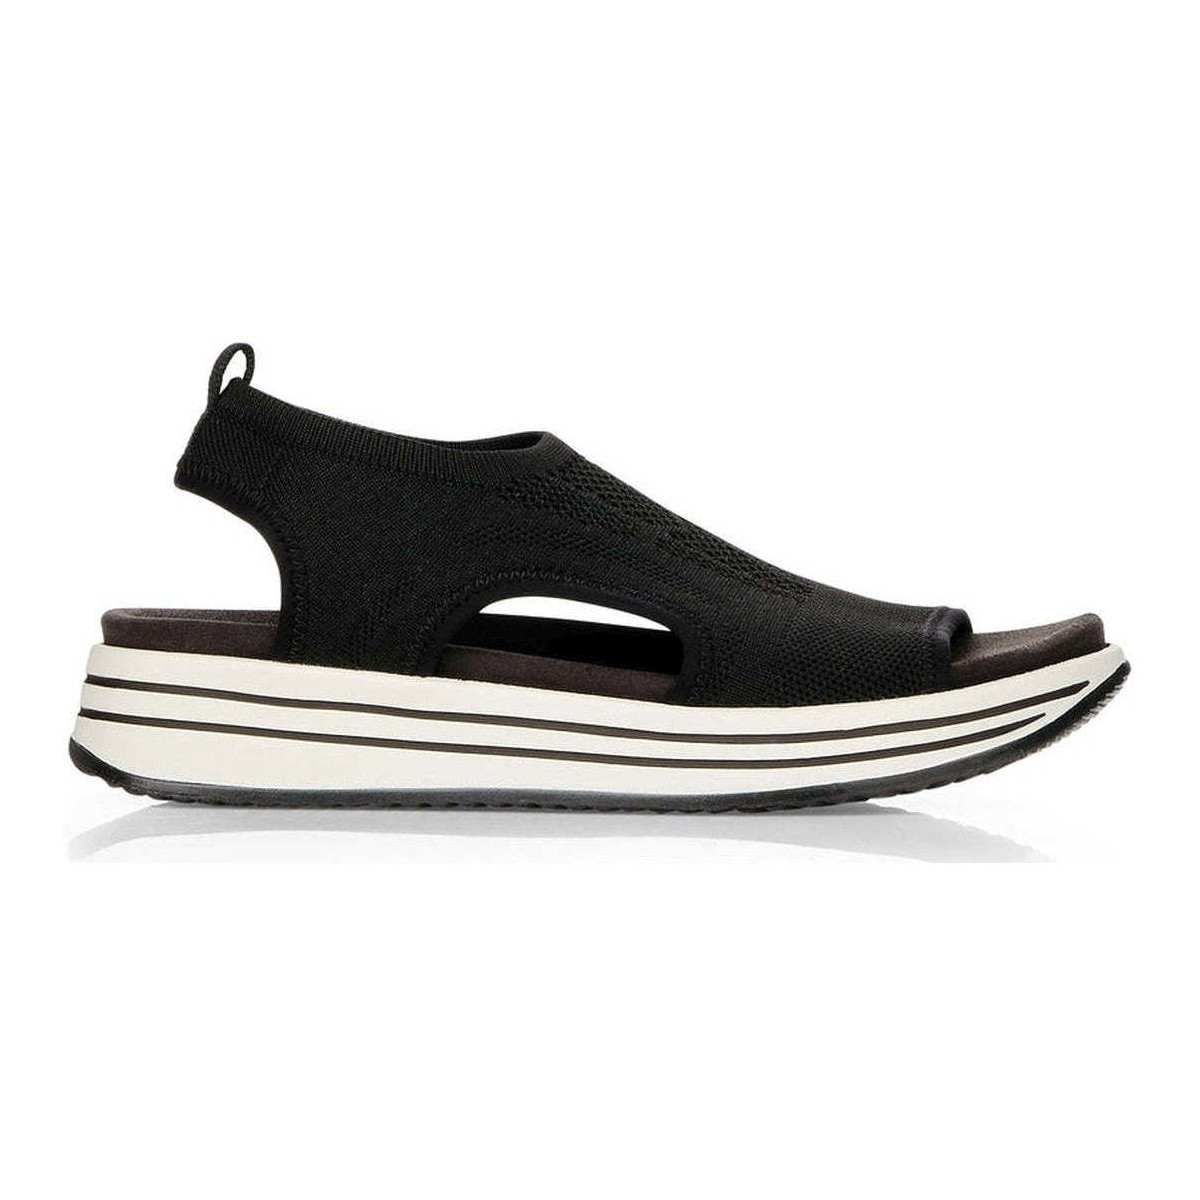 Chaussures Femme Sandales sport Remonte black casual open sandals Noir